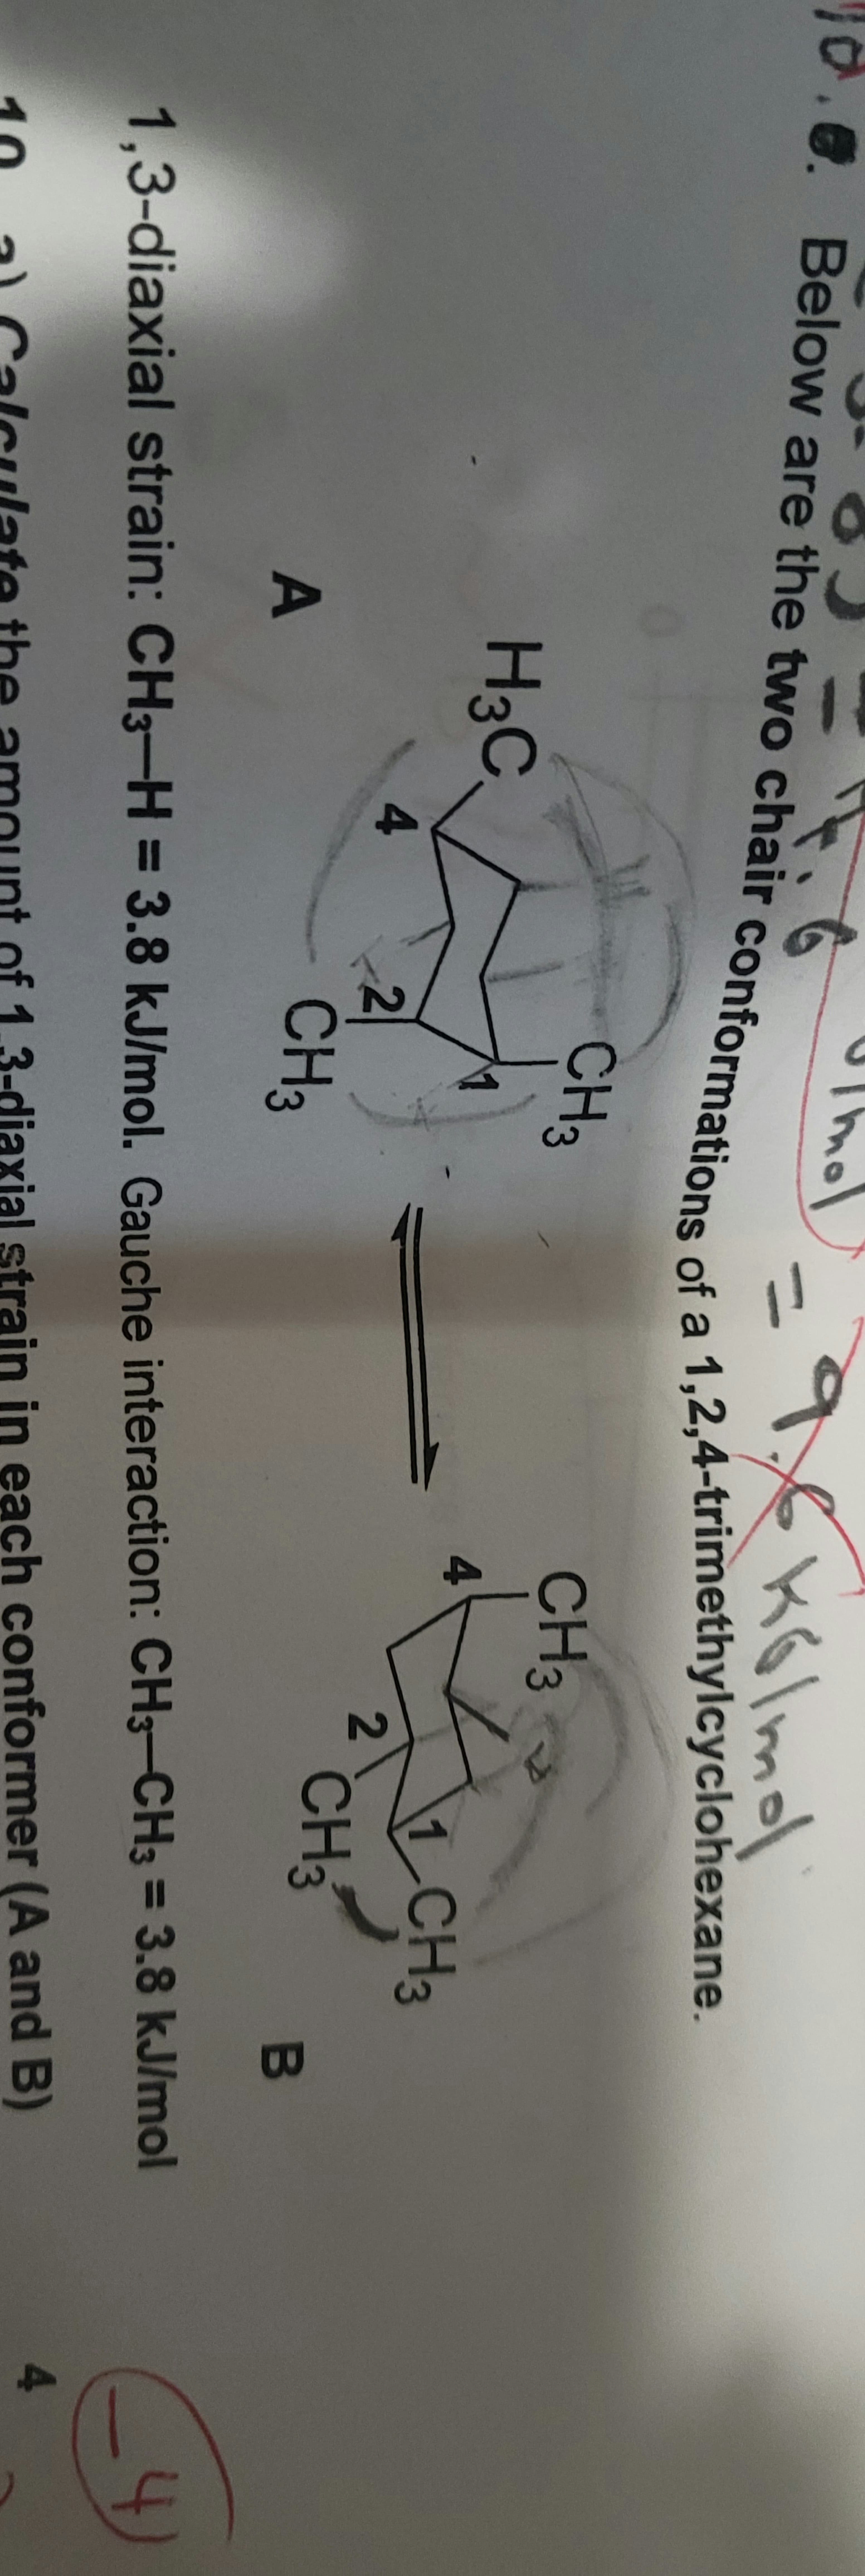 Glm
2,4-trimethyl
cyclohexane.
ns of a
CH3
CH3
H3C,
4
1 CH3
4
2
CH3
A
CH3
B
4
%3D
1,3-diaxial strain: CH3-H = 3 = 3.8 kJ/mol
3.8kJ/mol. Gauche interaction: CH3-CH3
4
3-diaxial strain in each conformer (A and B)
